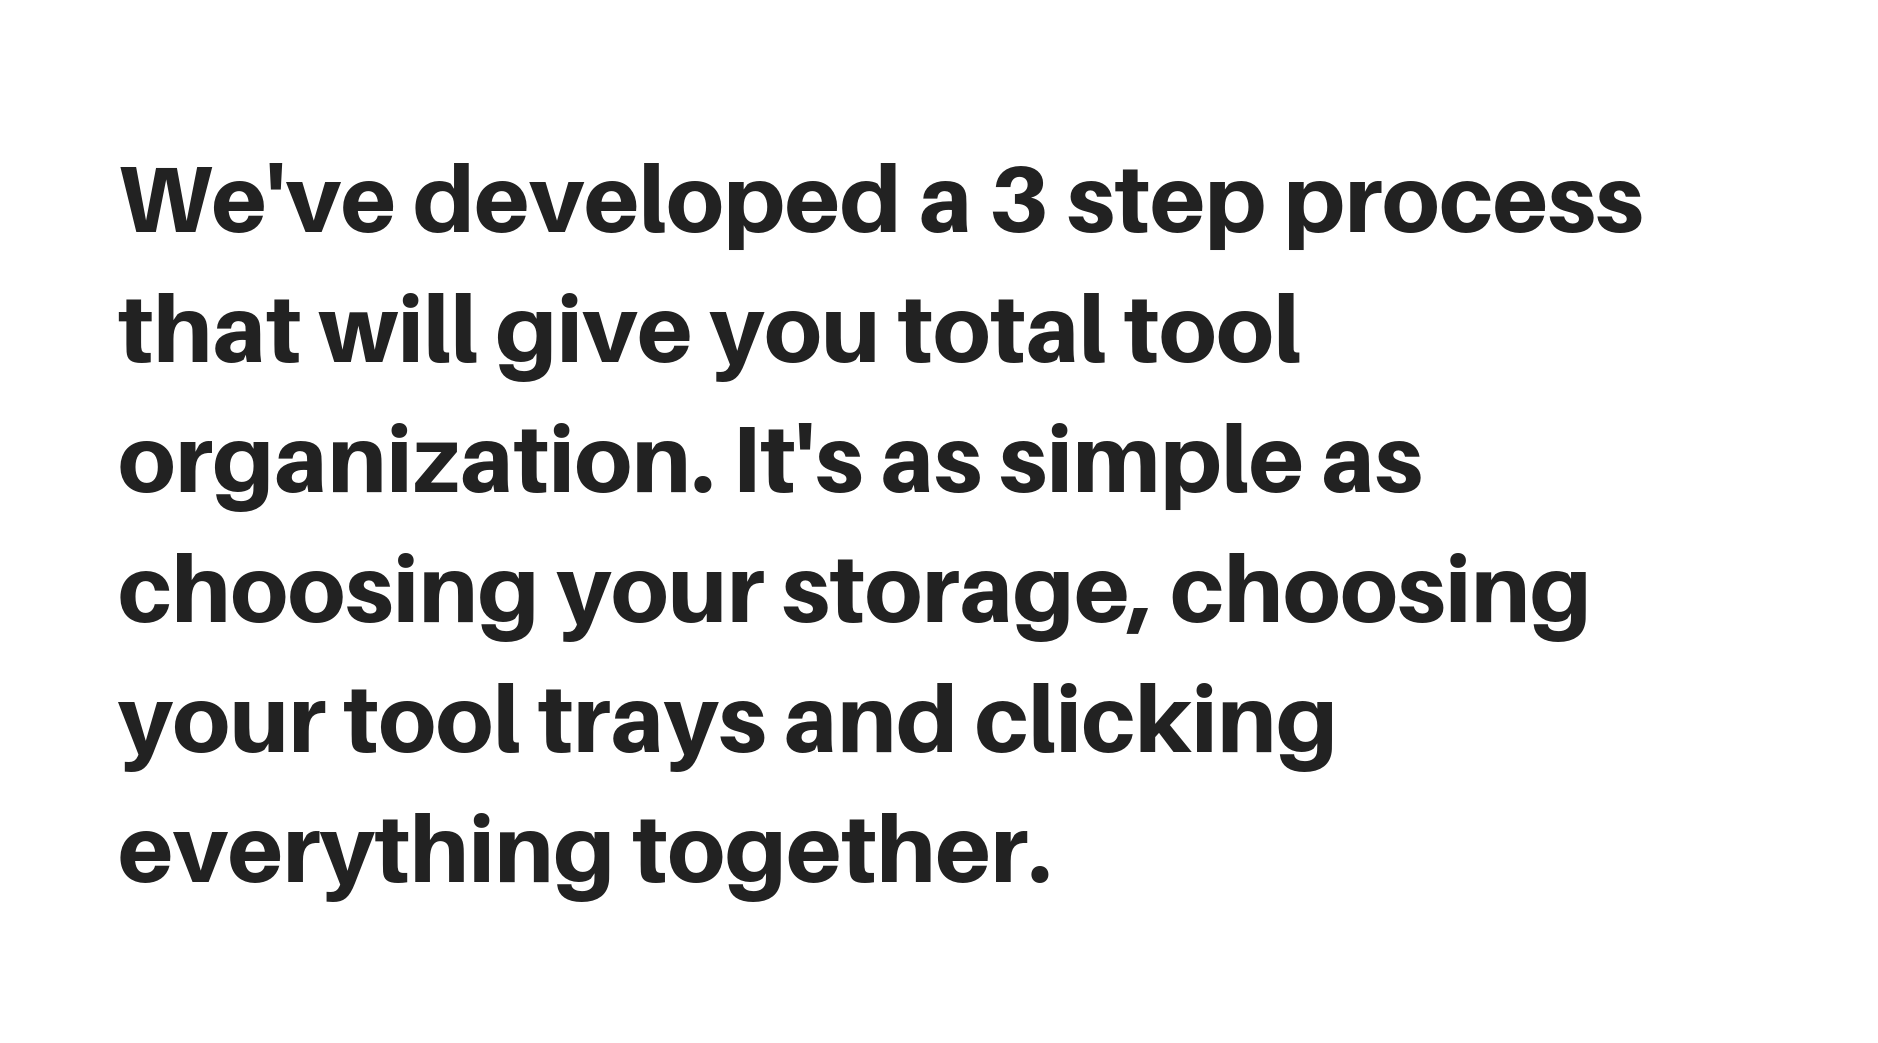 Hemos desarrollado un proceso de 3 pasos que le brindará una organización total de herramientas. Es tan simple como elegir su almacenamiento, elegir sus bandejas de herramientas y hacer clic en todo junto.